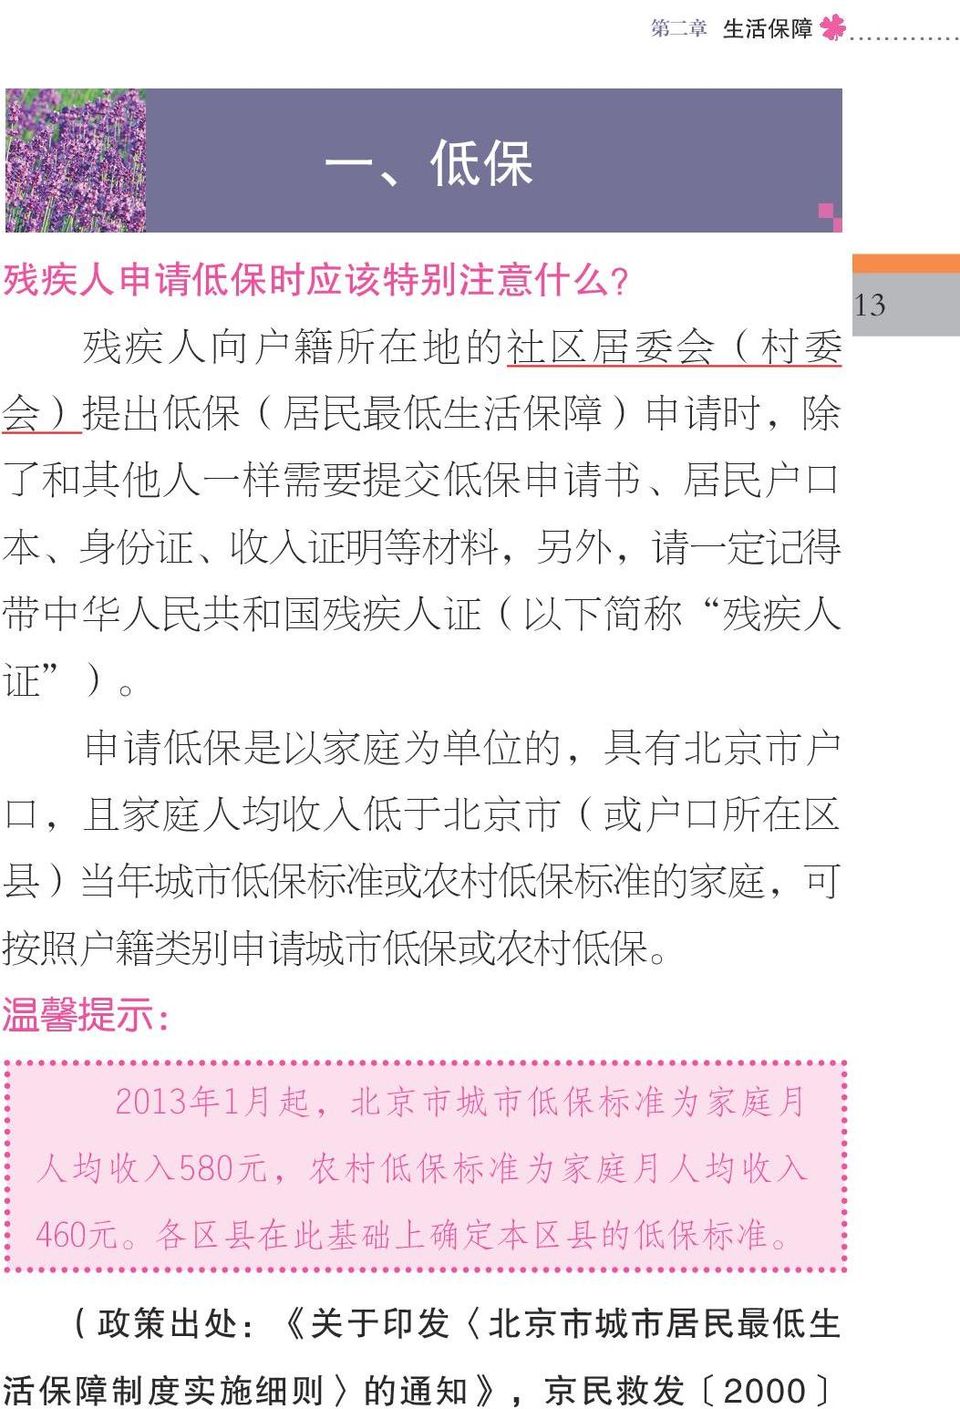 得 带 中 华 人 民 共 和 国 残 疾 人 证 ( 以 下 简 称 残 疾 人 证 ) 申 请 低 保 是 以 家 庭 为 单 位 的, 具 有 北 京 市 户 口, 且 家 庭 人 均 收 入 低 于 北 京 市 ( 或 户 口 所 在 区 县 ) 当 年 城 市 低 保 标 准 或 农 村 低 保 标